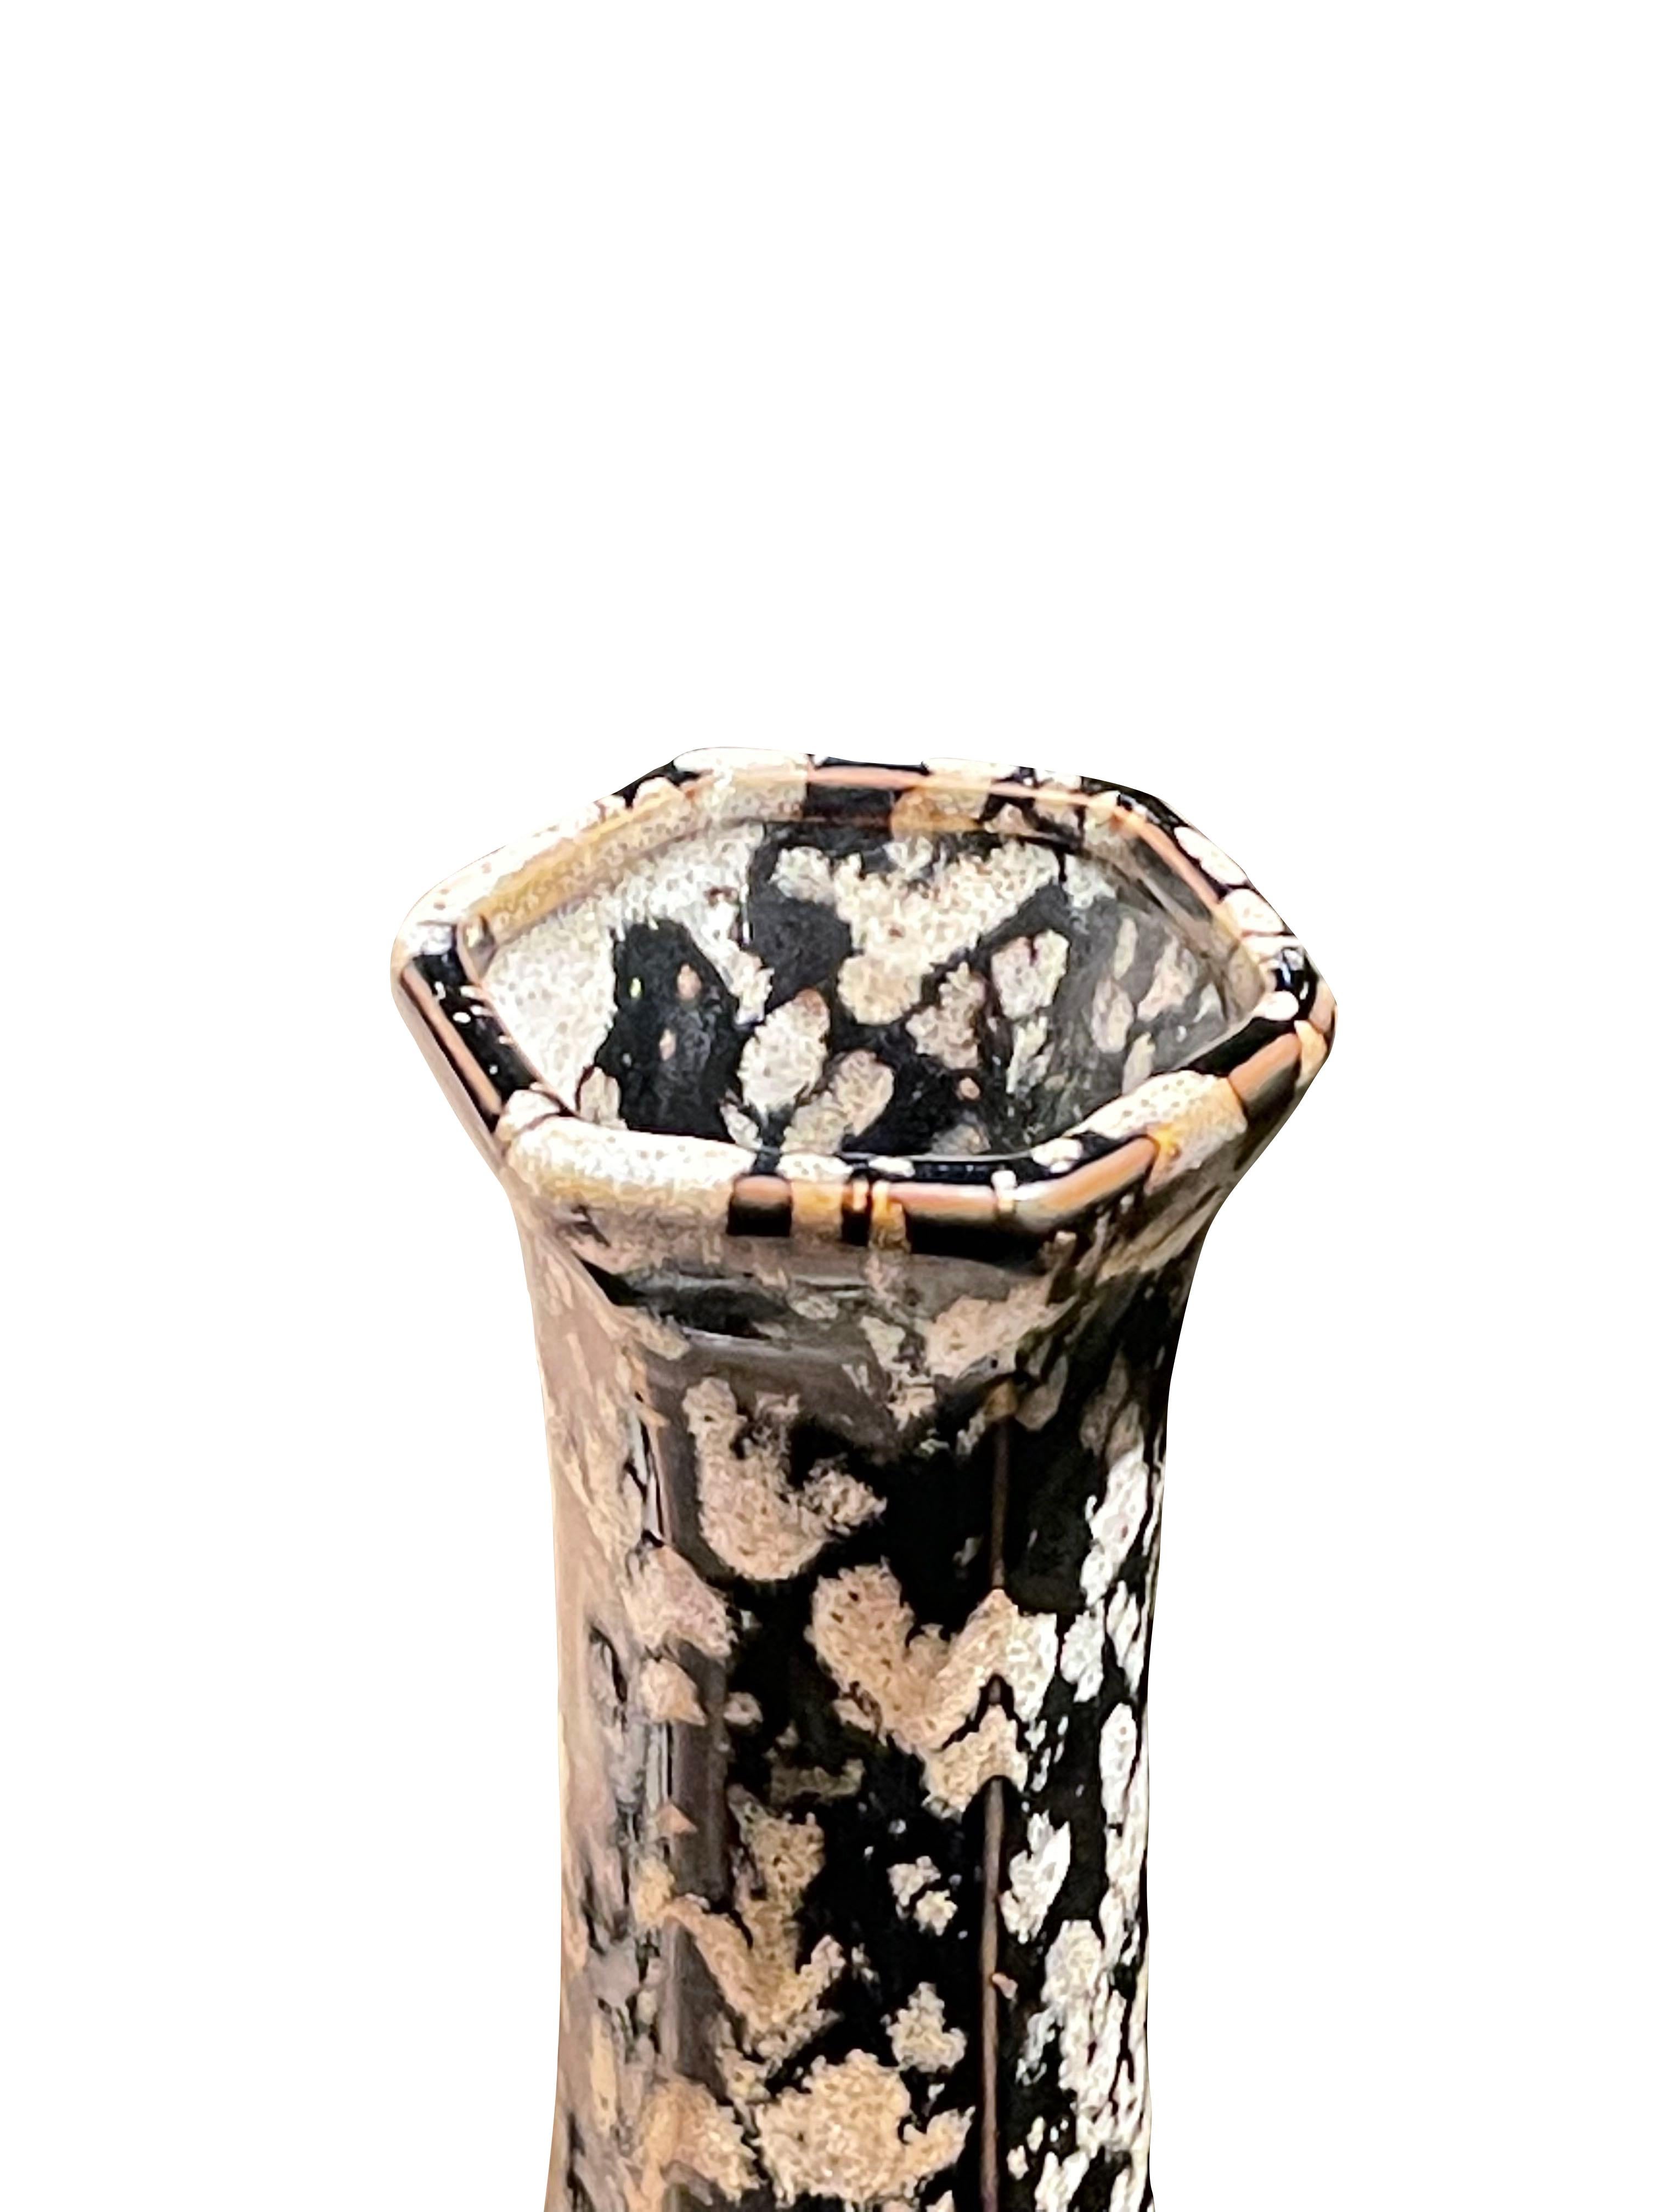 Grand vase chinois contemporain à ouverture hexagonale.
Fond noir avec motif de glaçure à éclaboussures blanches.
Deux disponibles et vendus individuellement.
